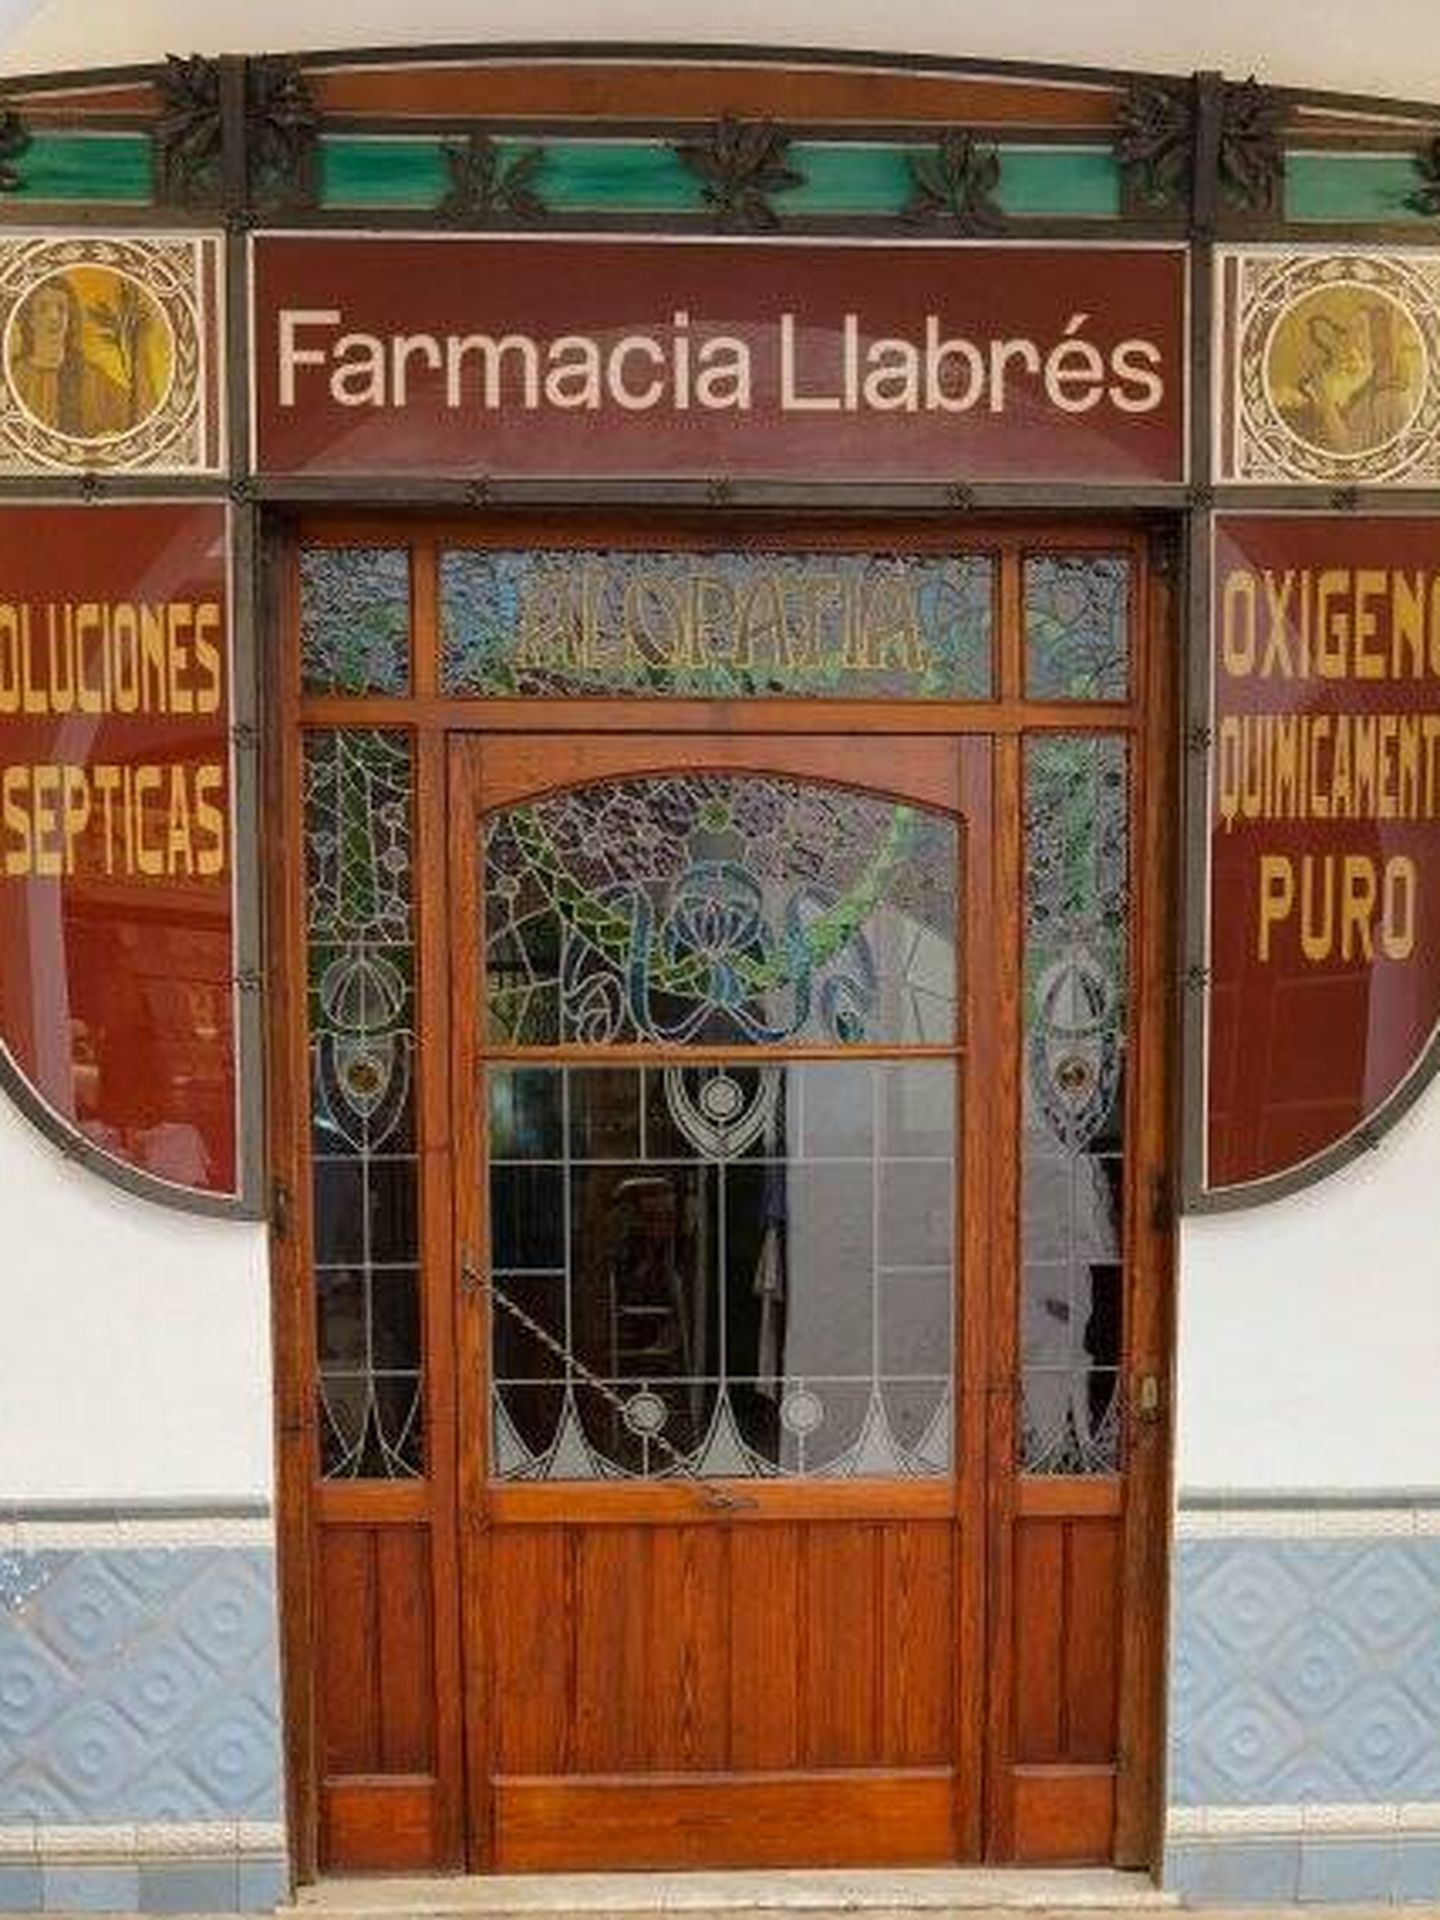 La farmacia Llabrés, rehabilitada. (Fundación Hesperia)